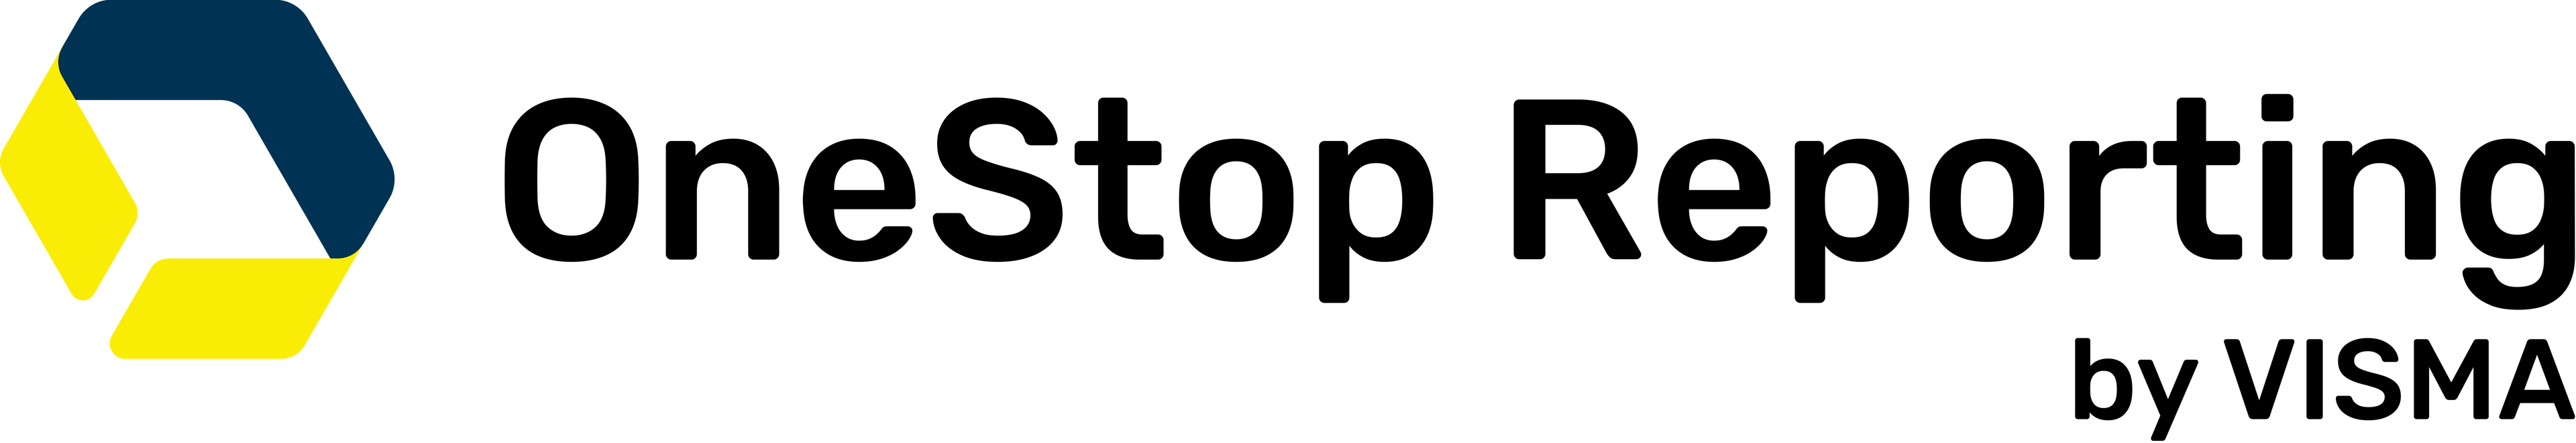 Logoen til OneStop Reporting der produktnavnet er skrevet i sort tekst